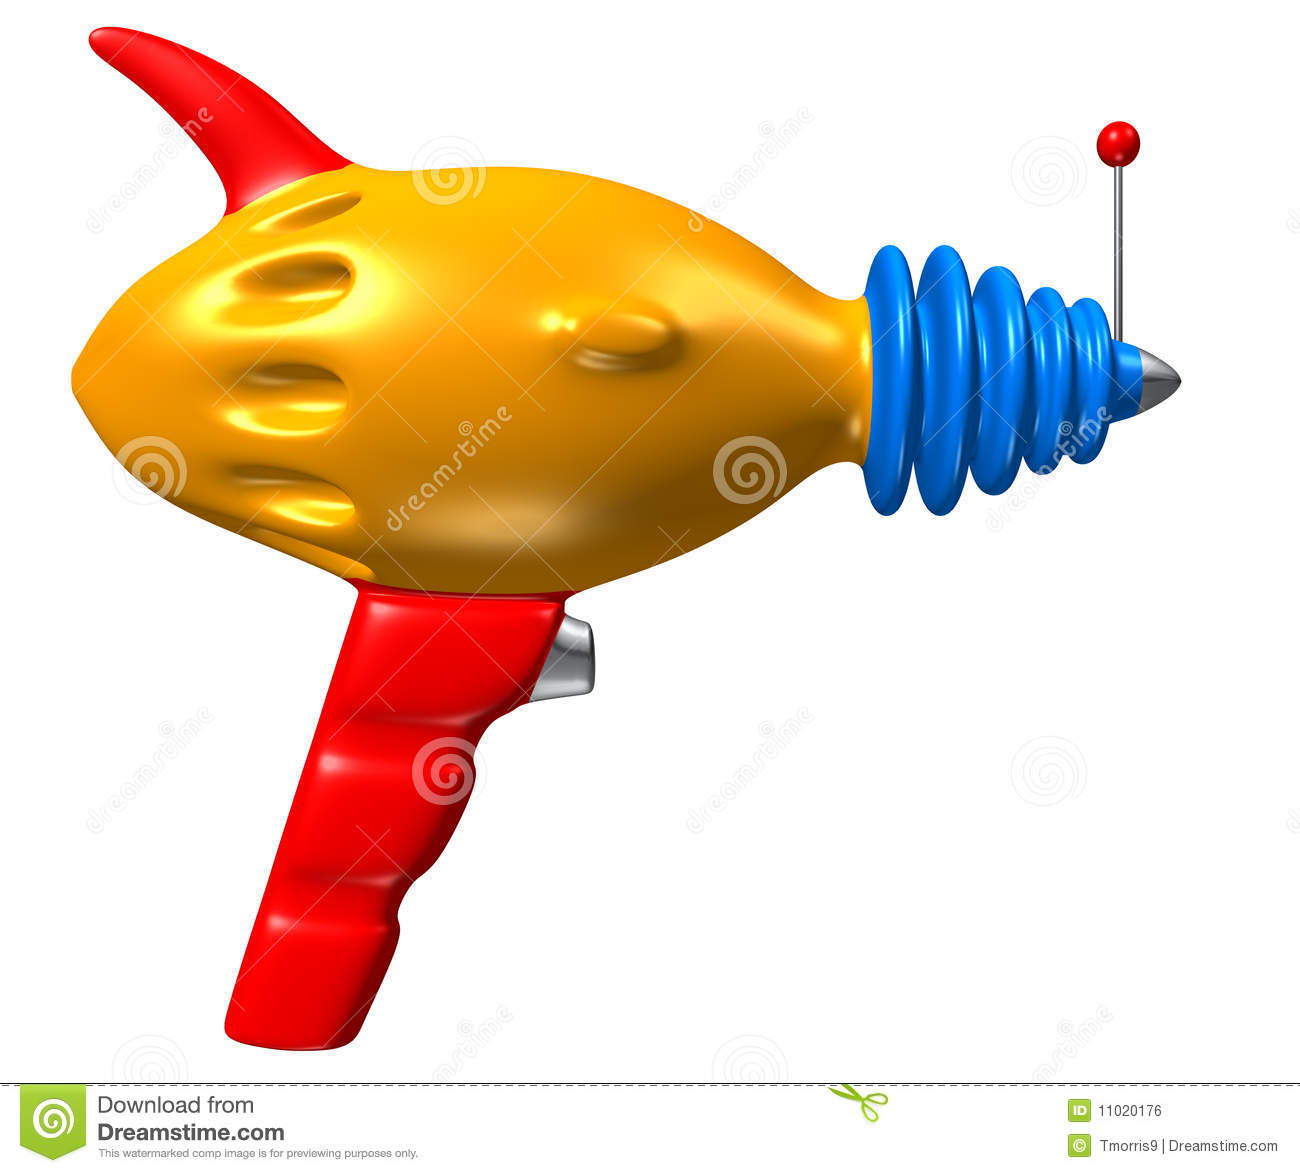 Toy Phaser Gun Royalty Free Stock Image   Image  11020176